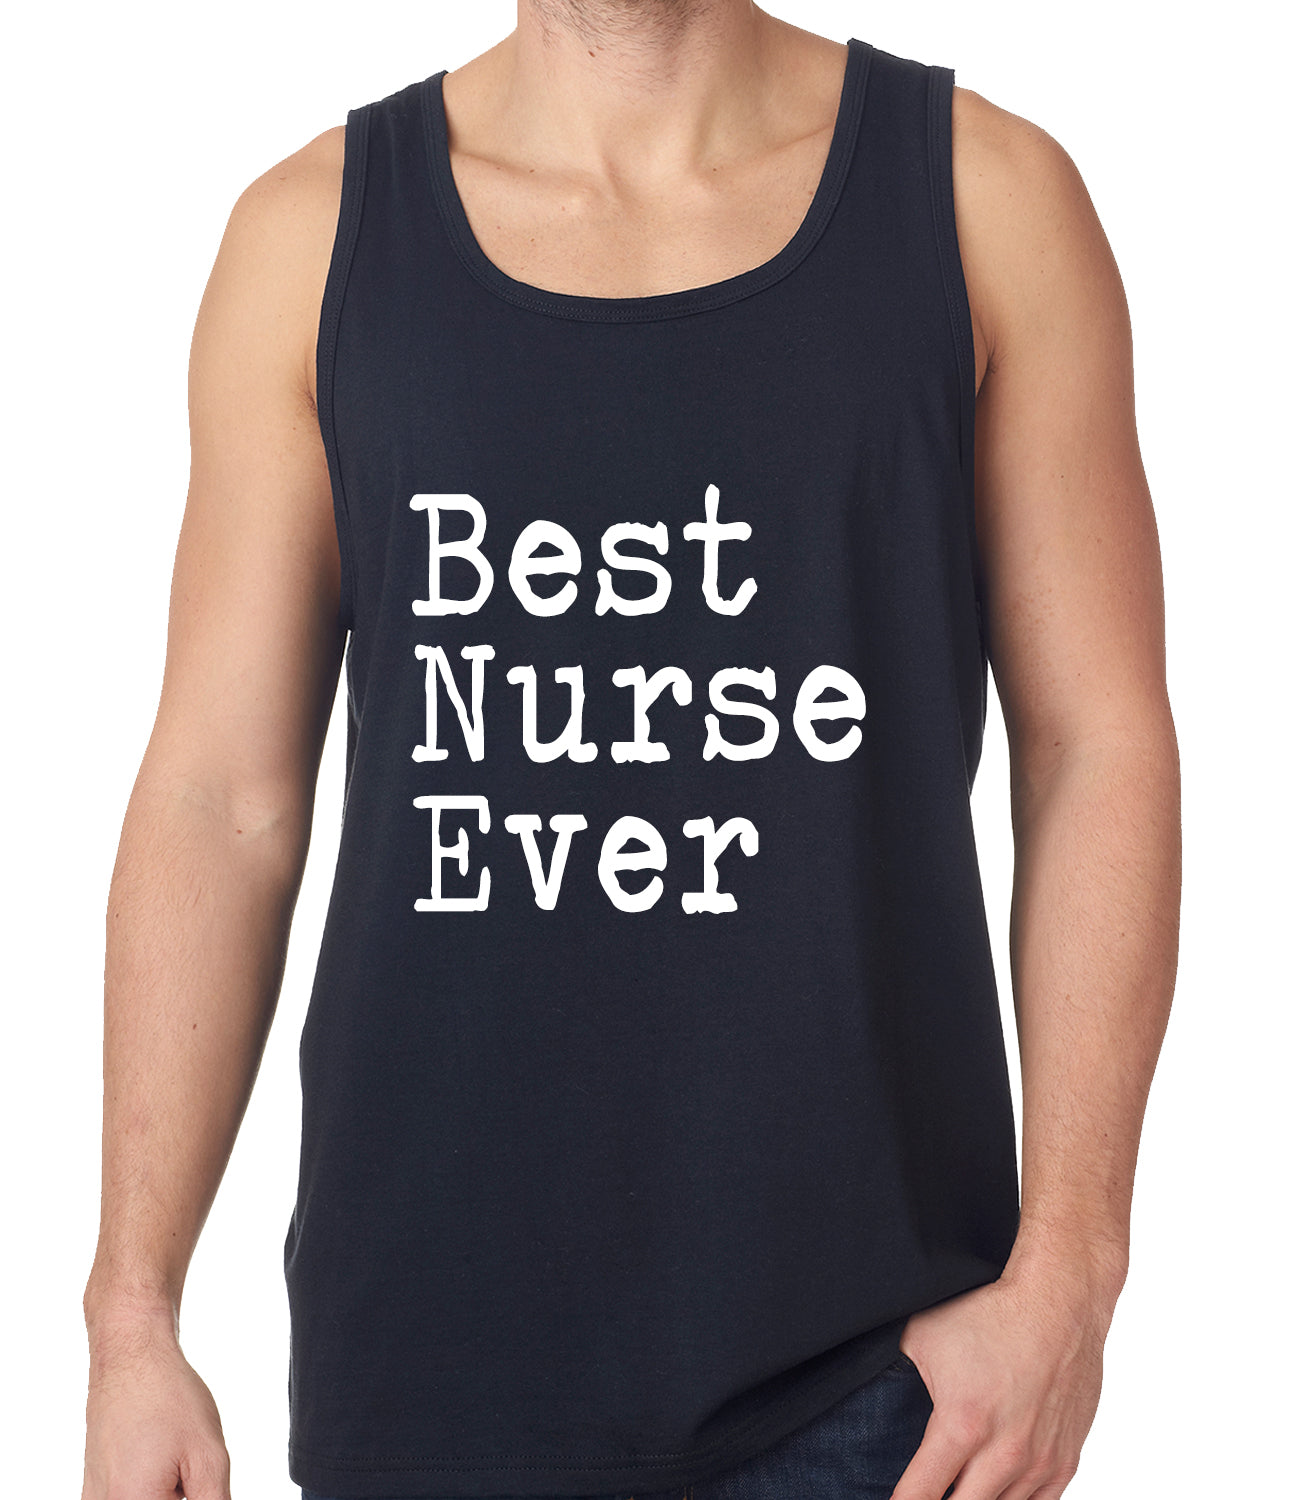 Best Nurse Ever Tank Top